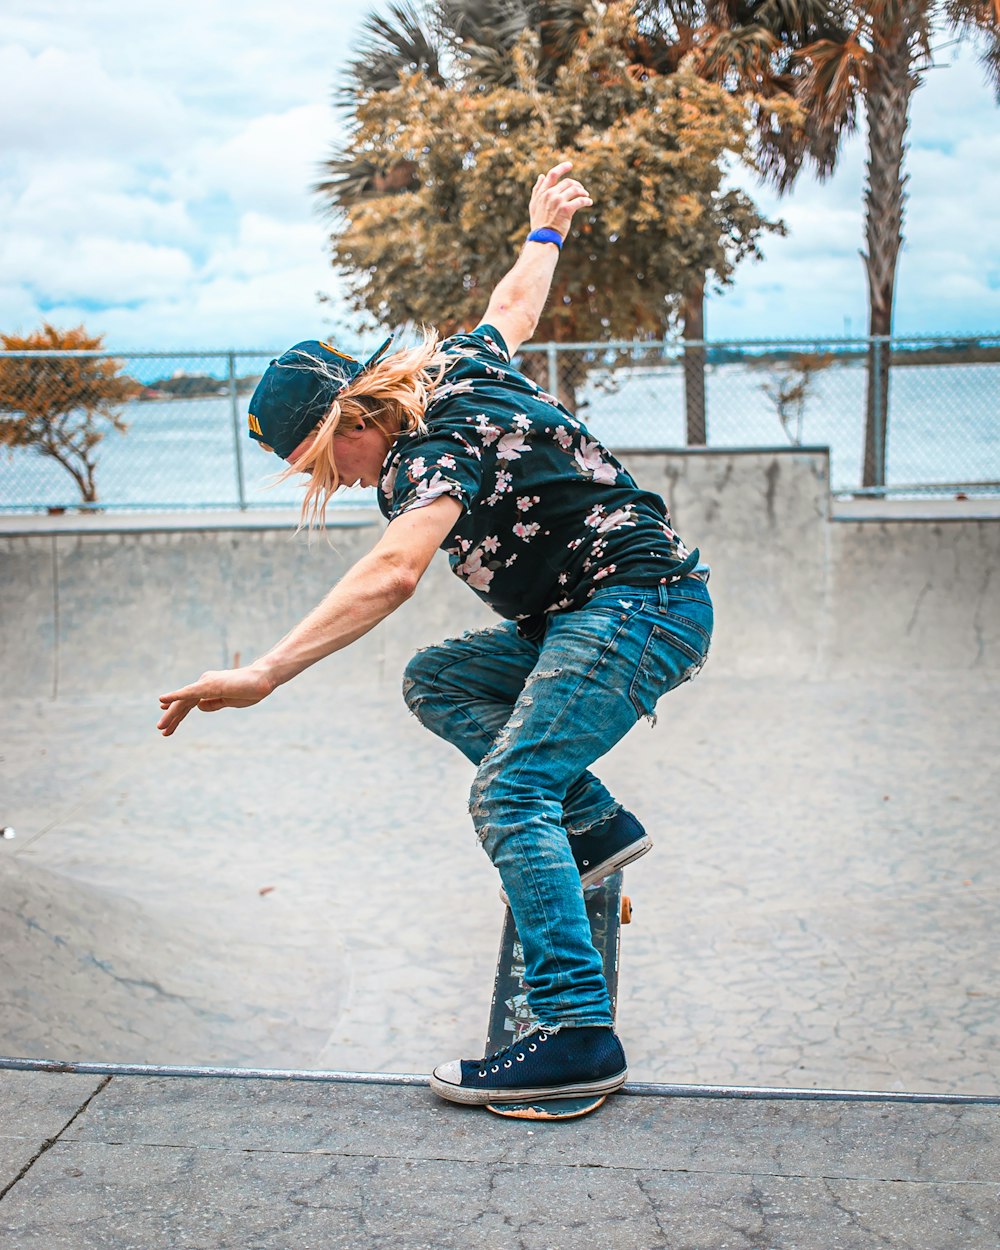 skateboarder doing stunts